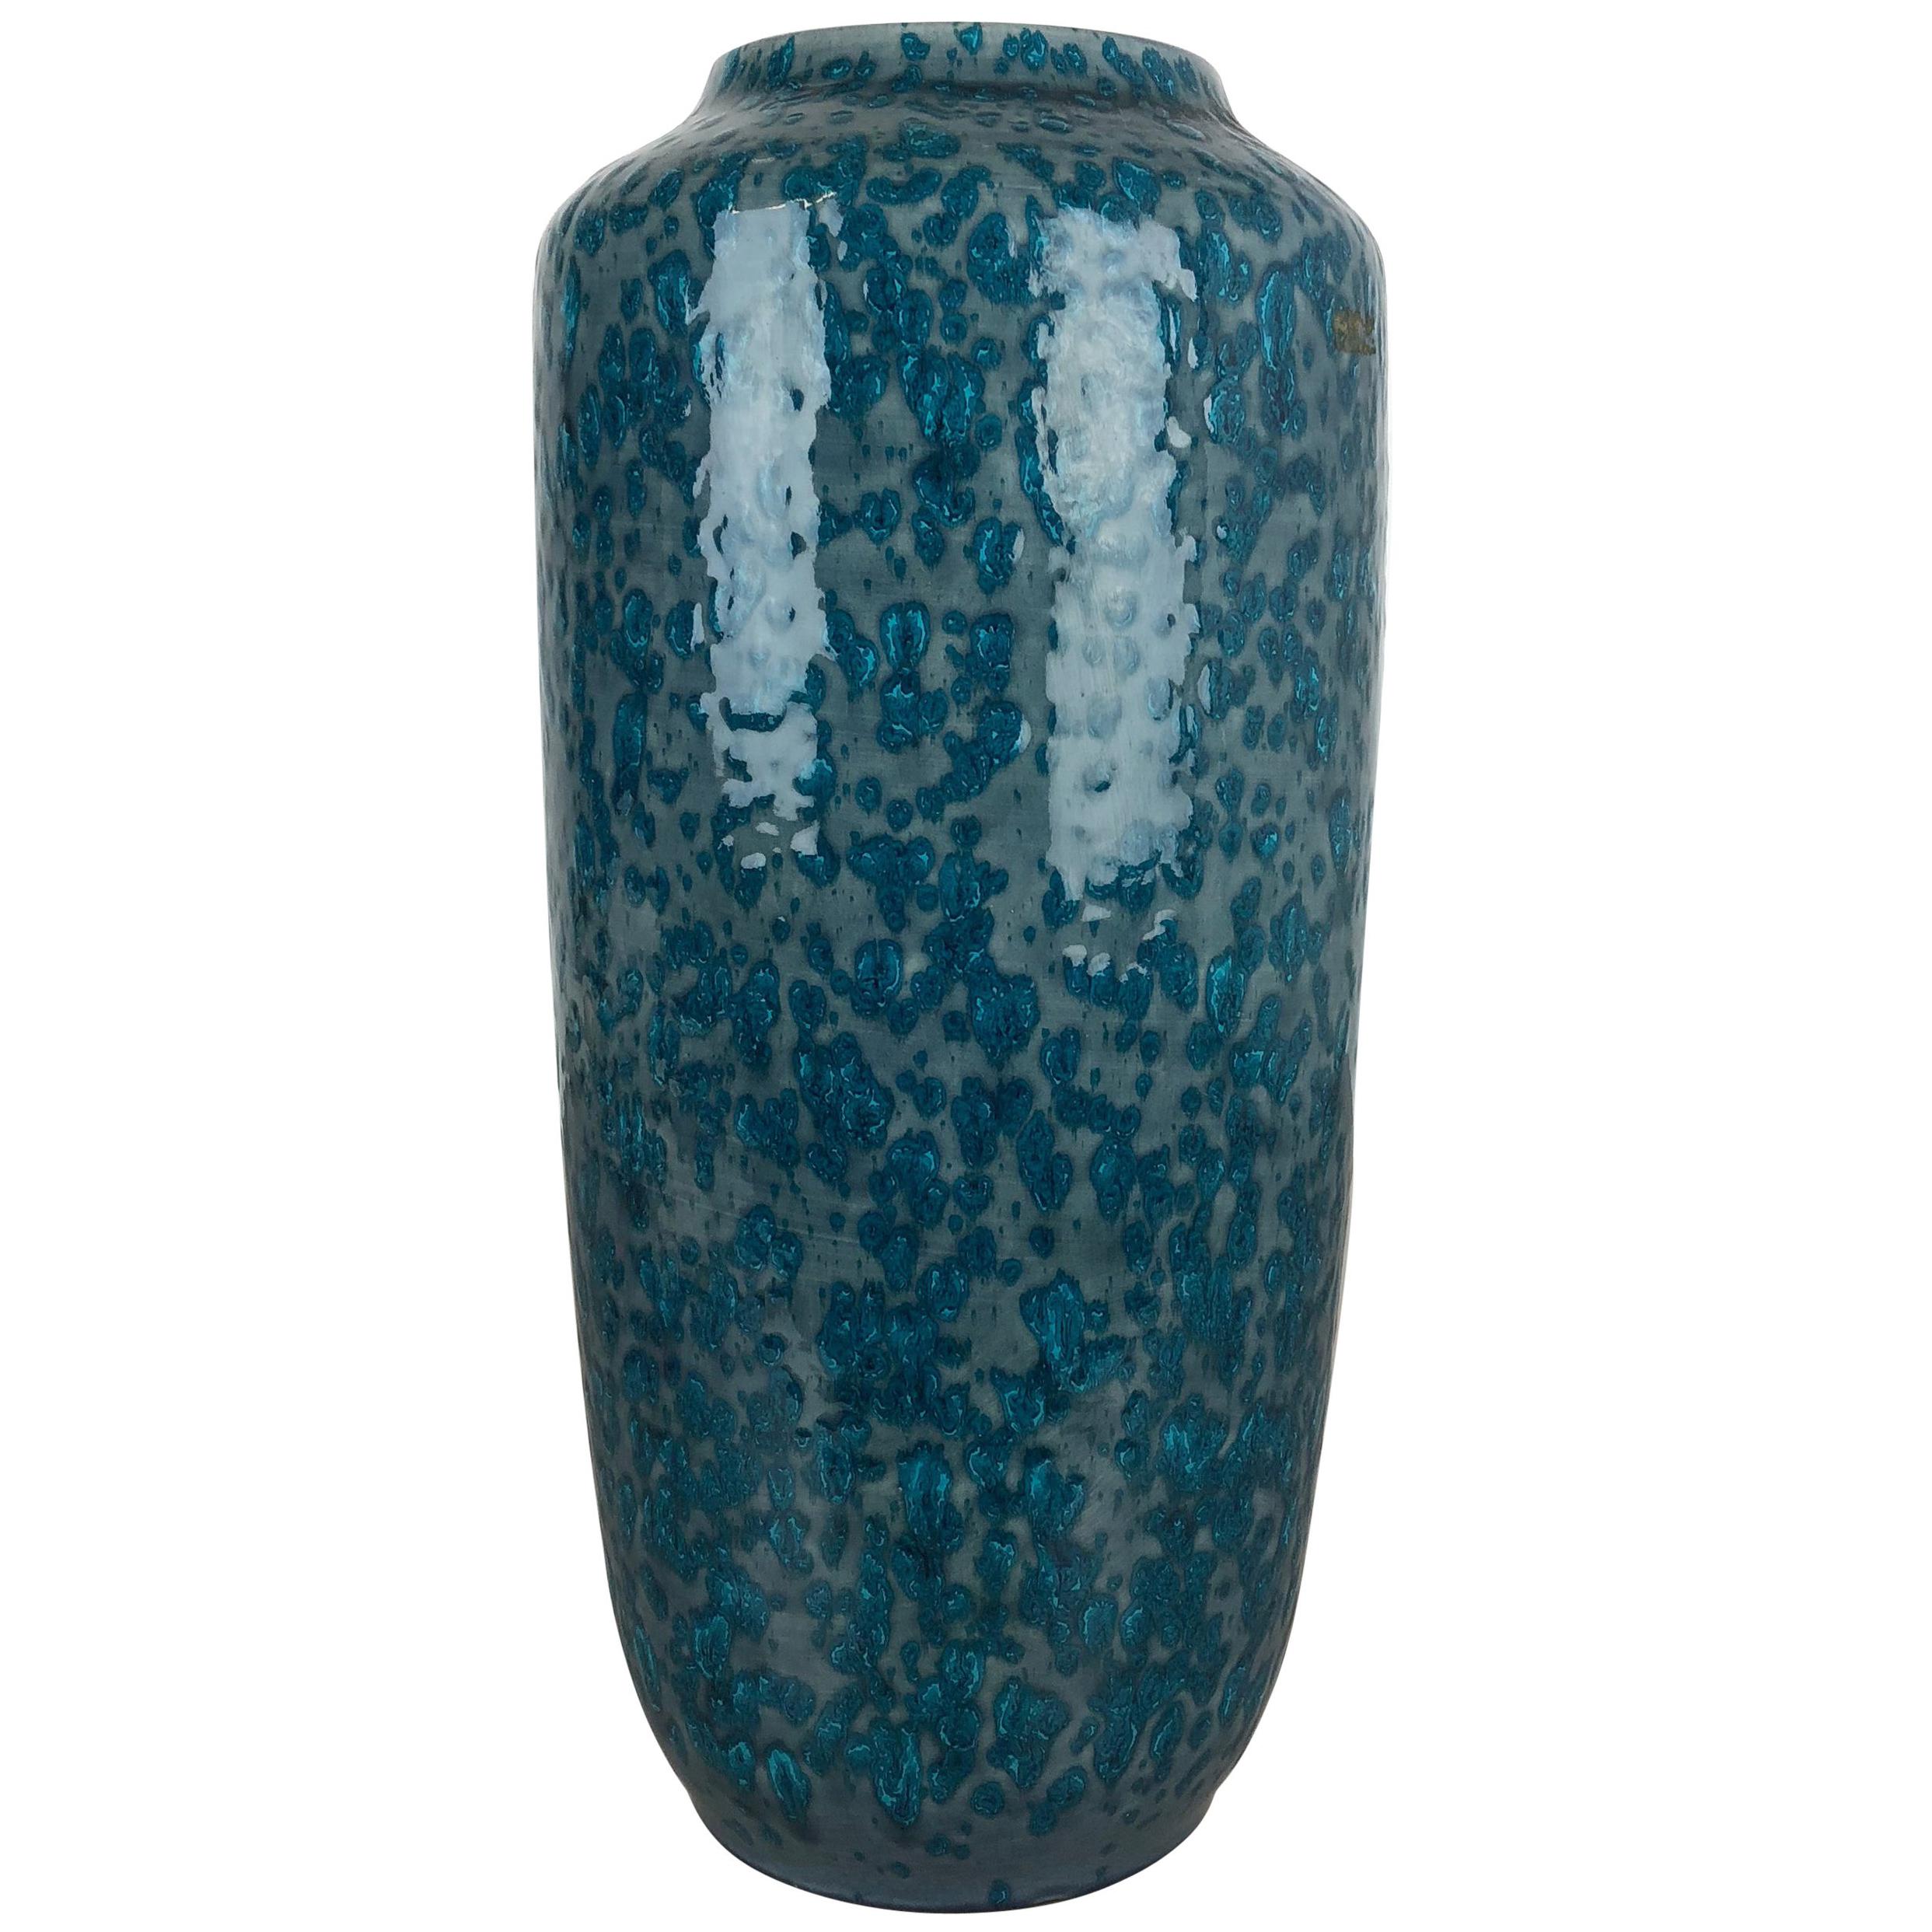 Grand vase en poterie lave grasse multicolore 517-45 fabriqué par Scheurich, 1970